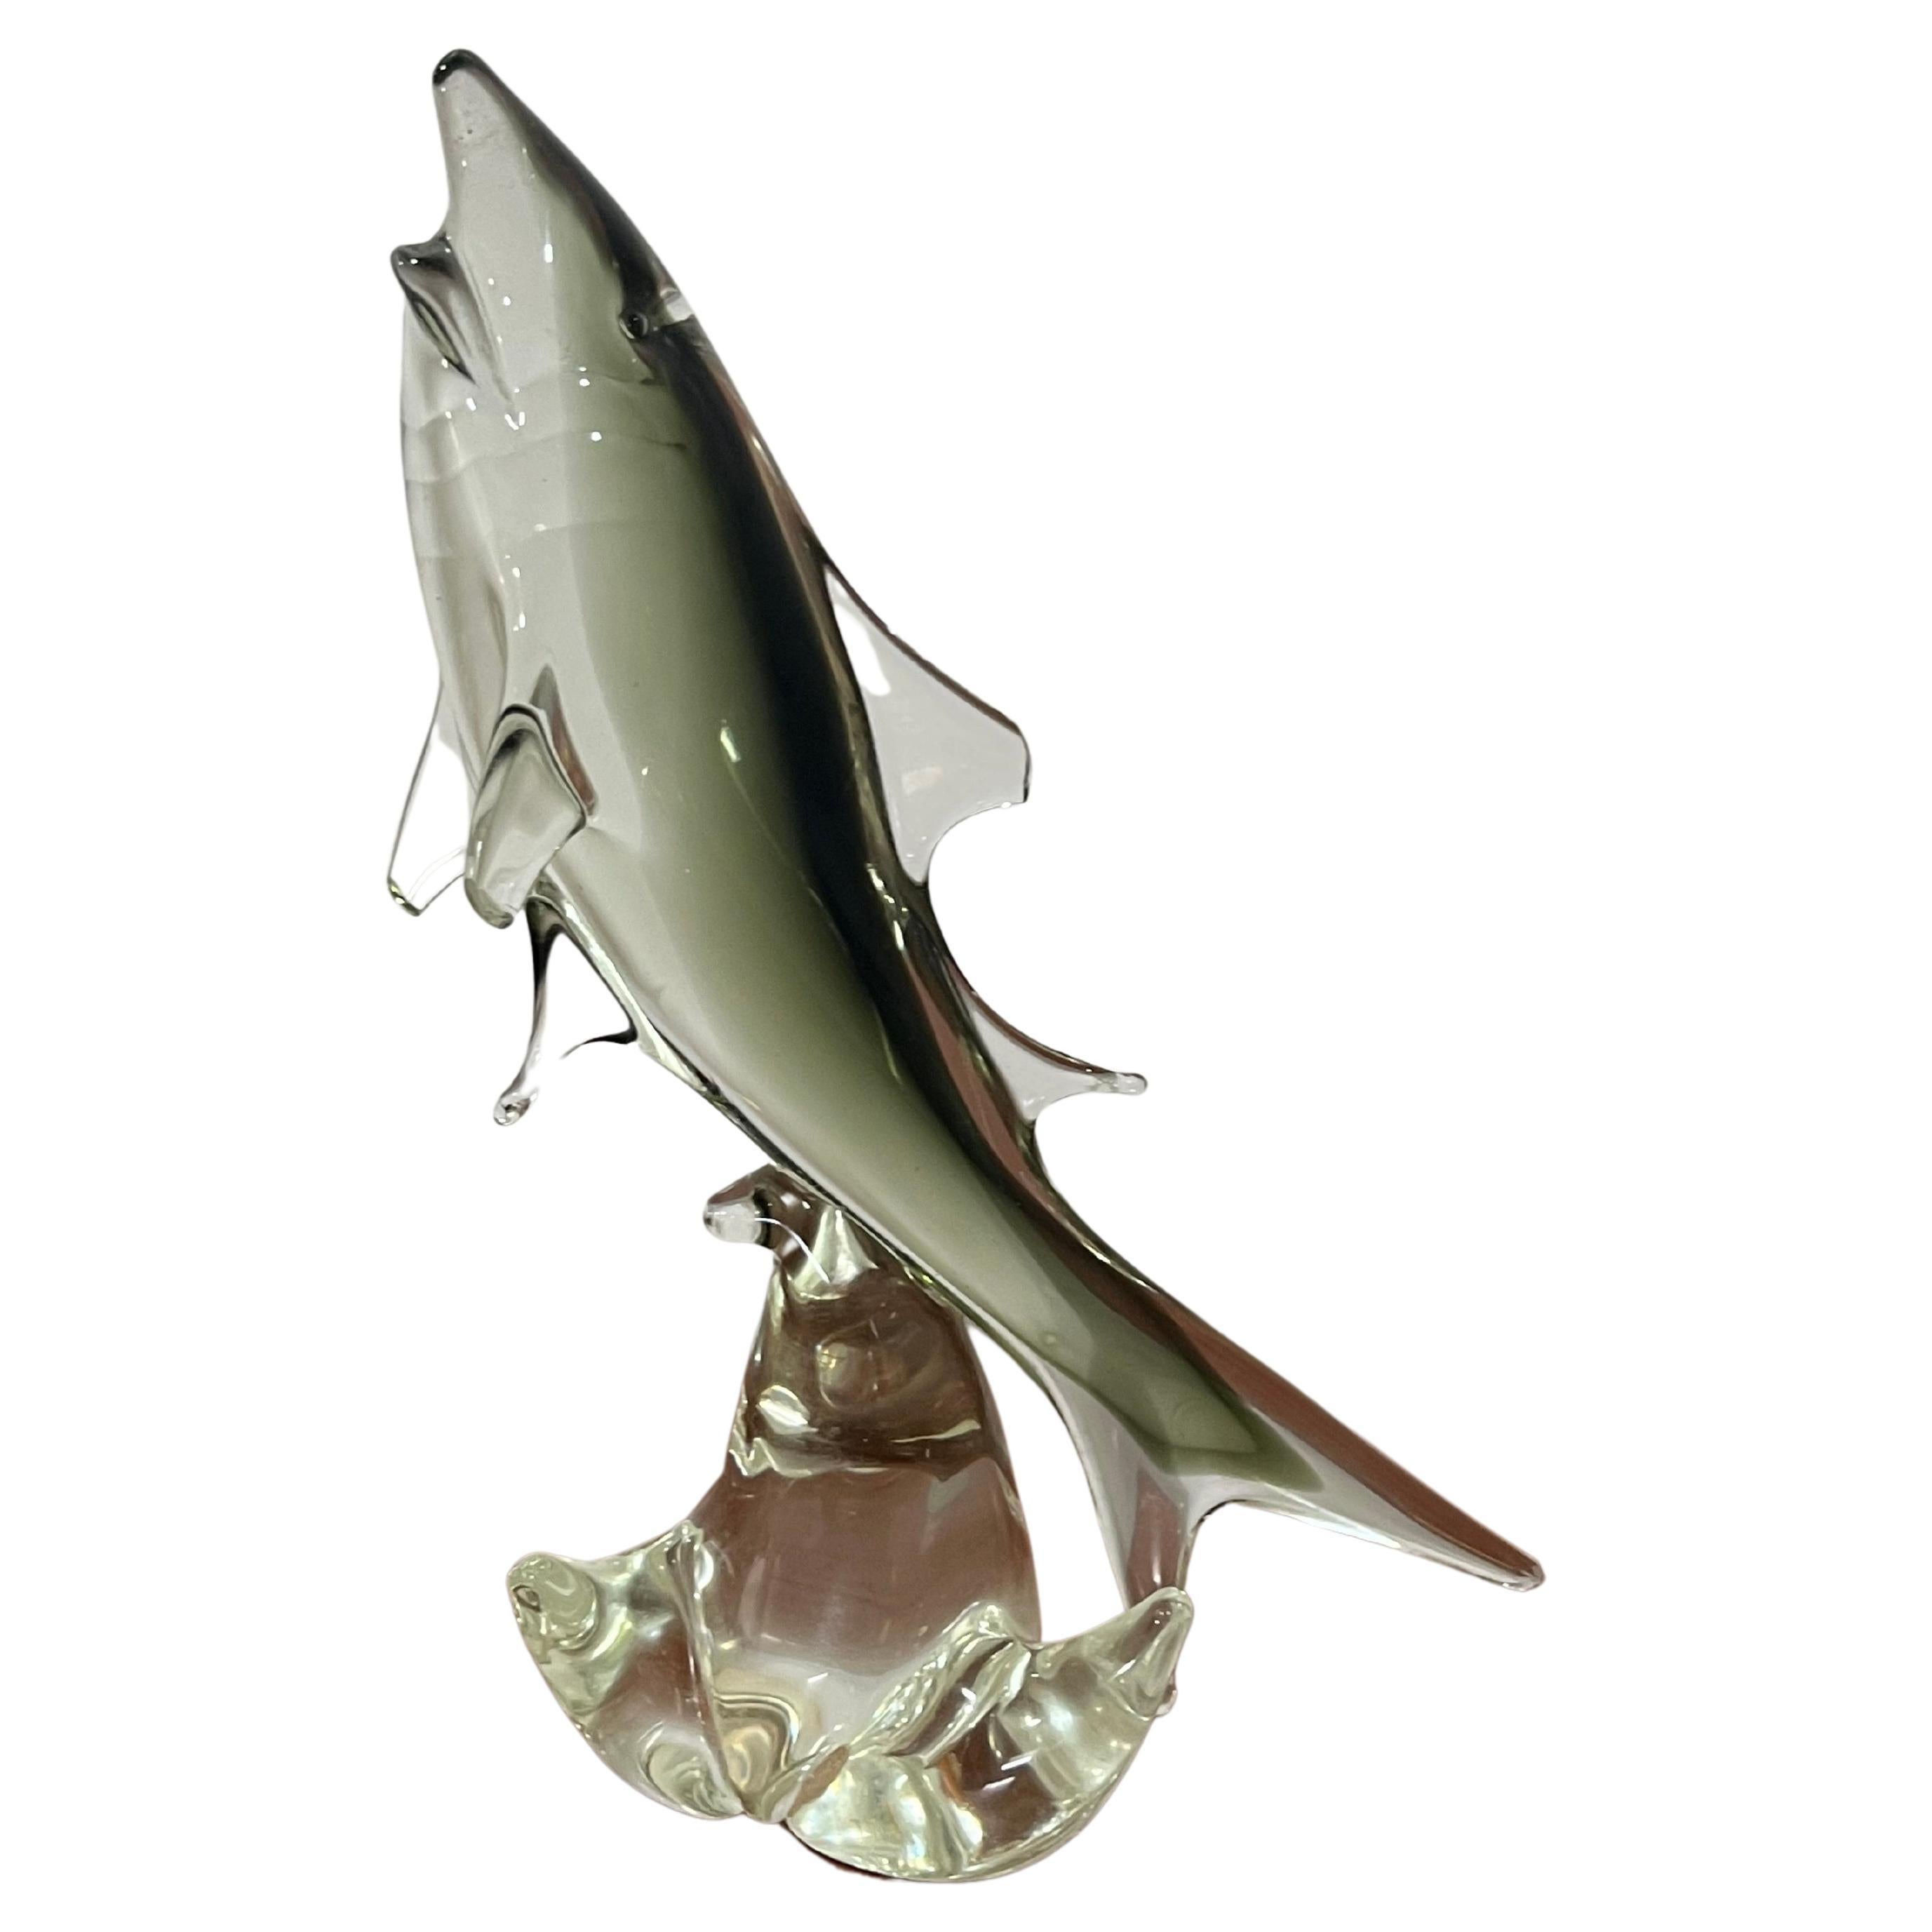 Italian Murano Smoked Glass Shark Sculpture 1960